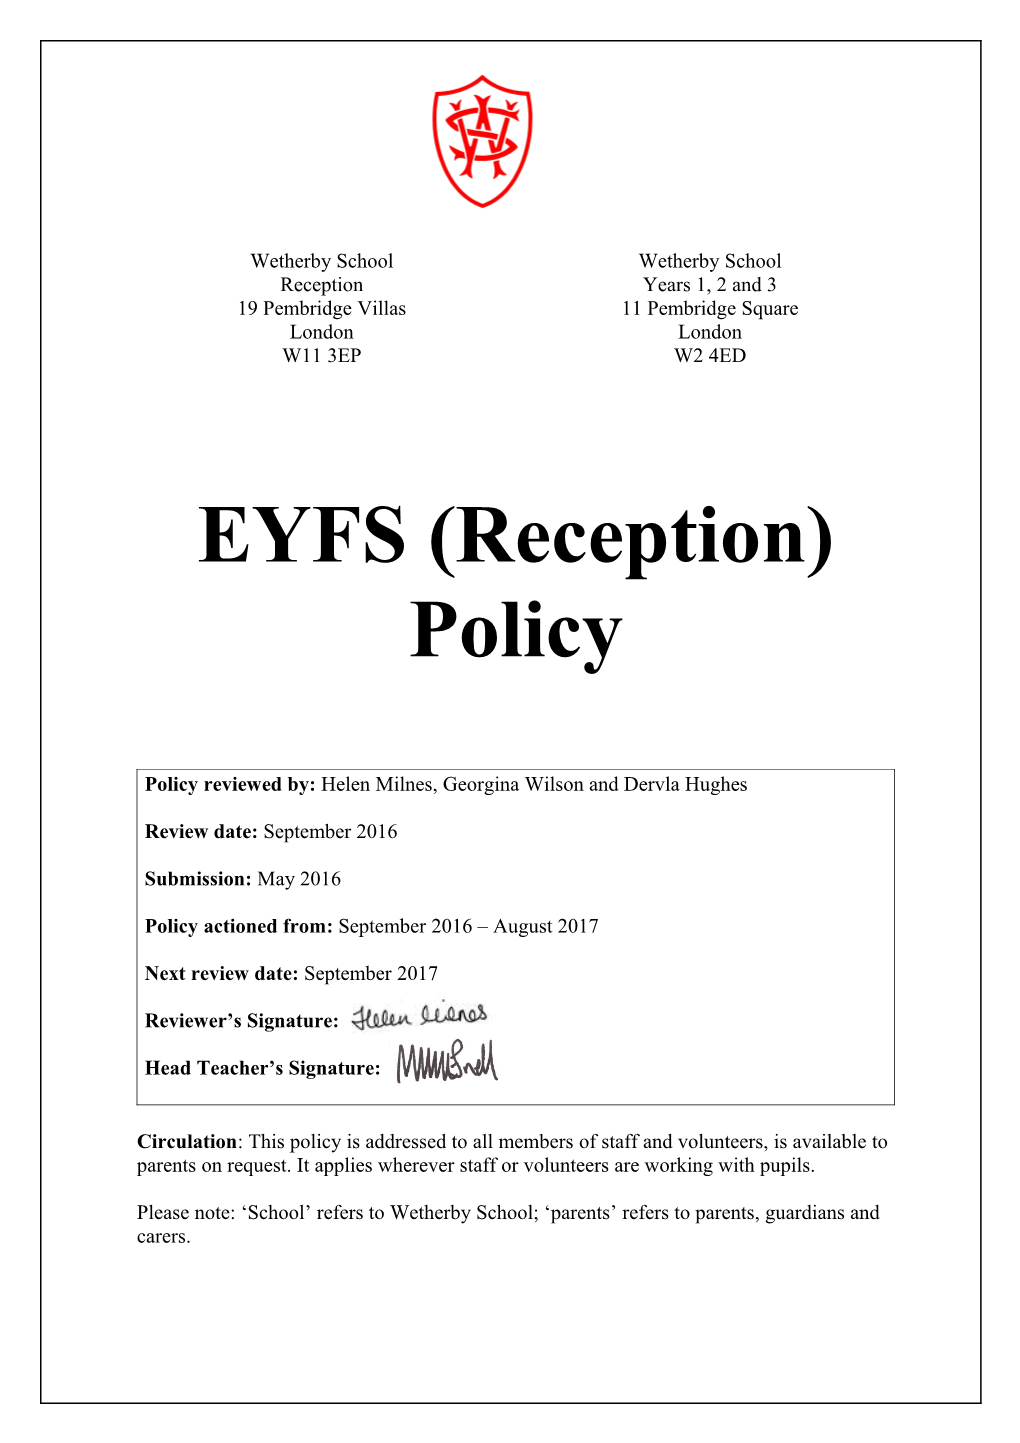 EYFS (Reception) Policy